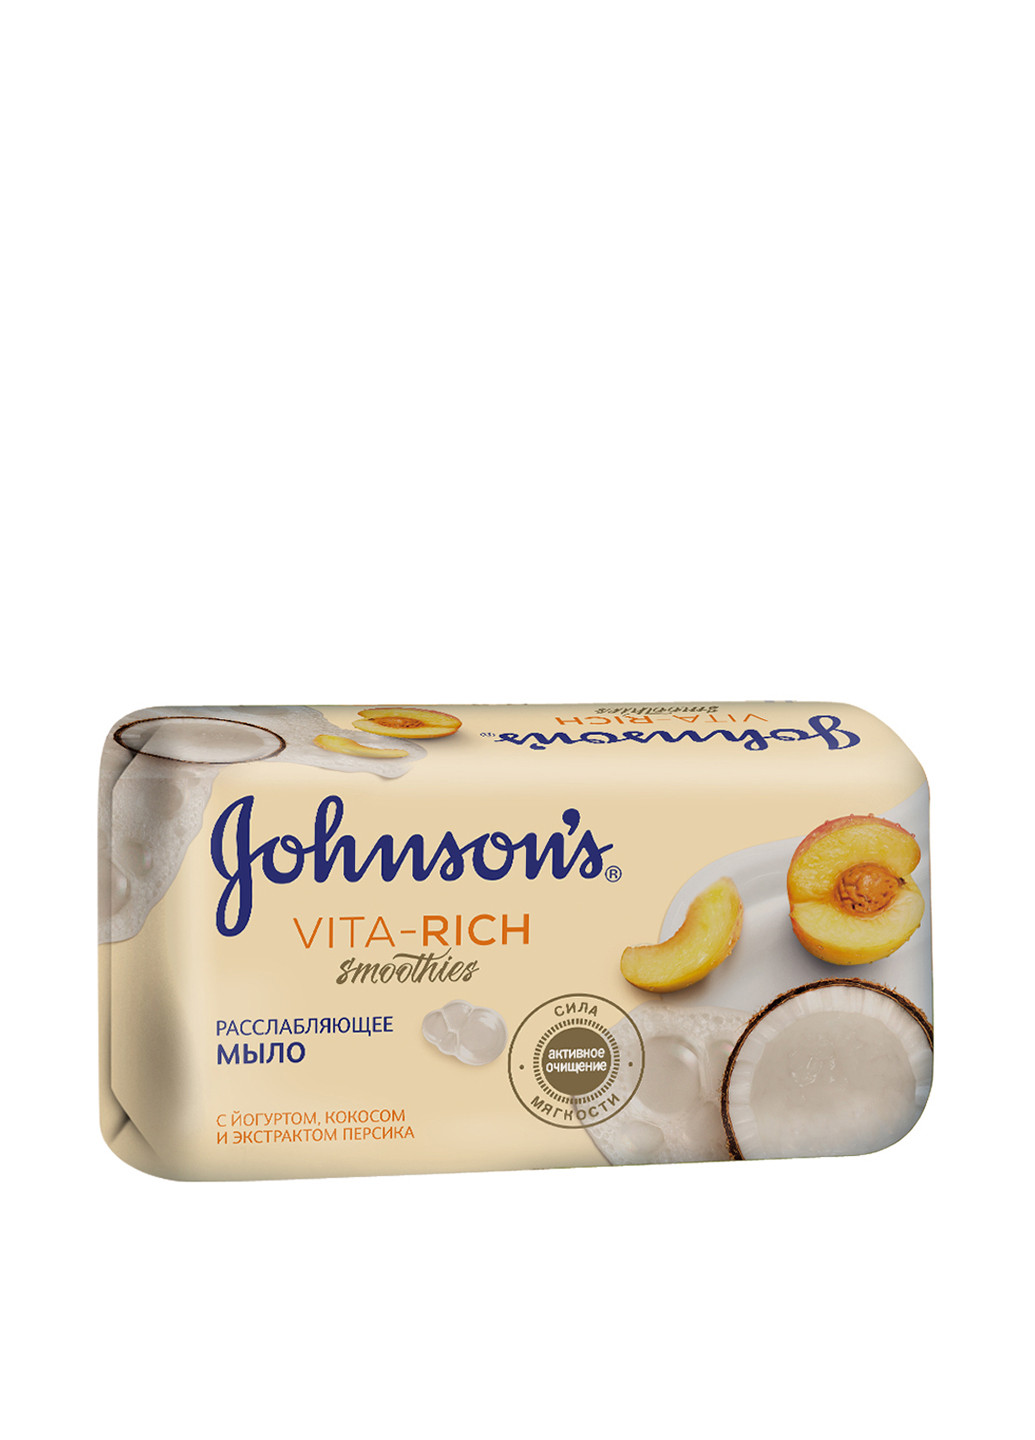 Мило "Розслаблюючу" з йогуртом, кокосом і екстрактом персика Body Care Vita-Rich Smoothies Soap 125 г Johnson's (88097073)